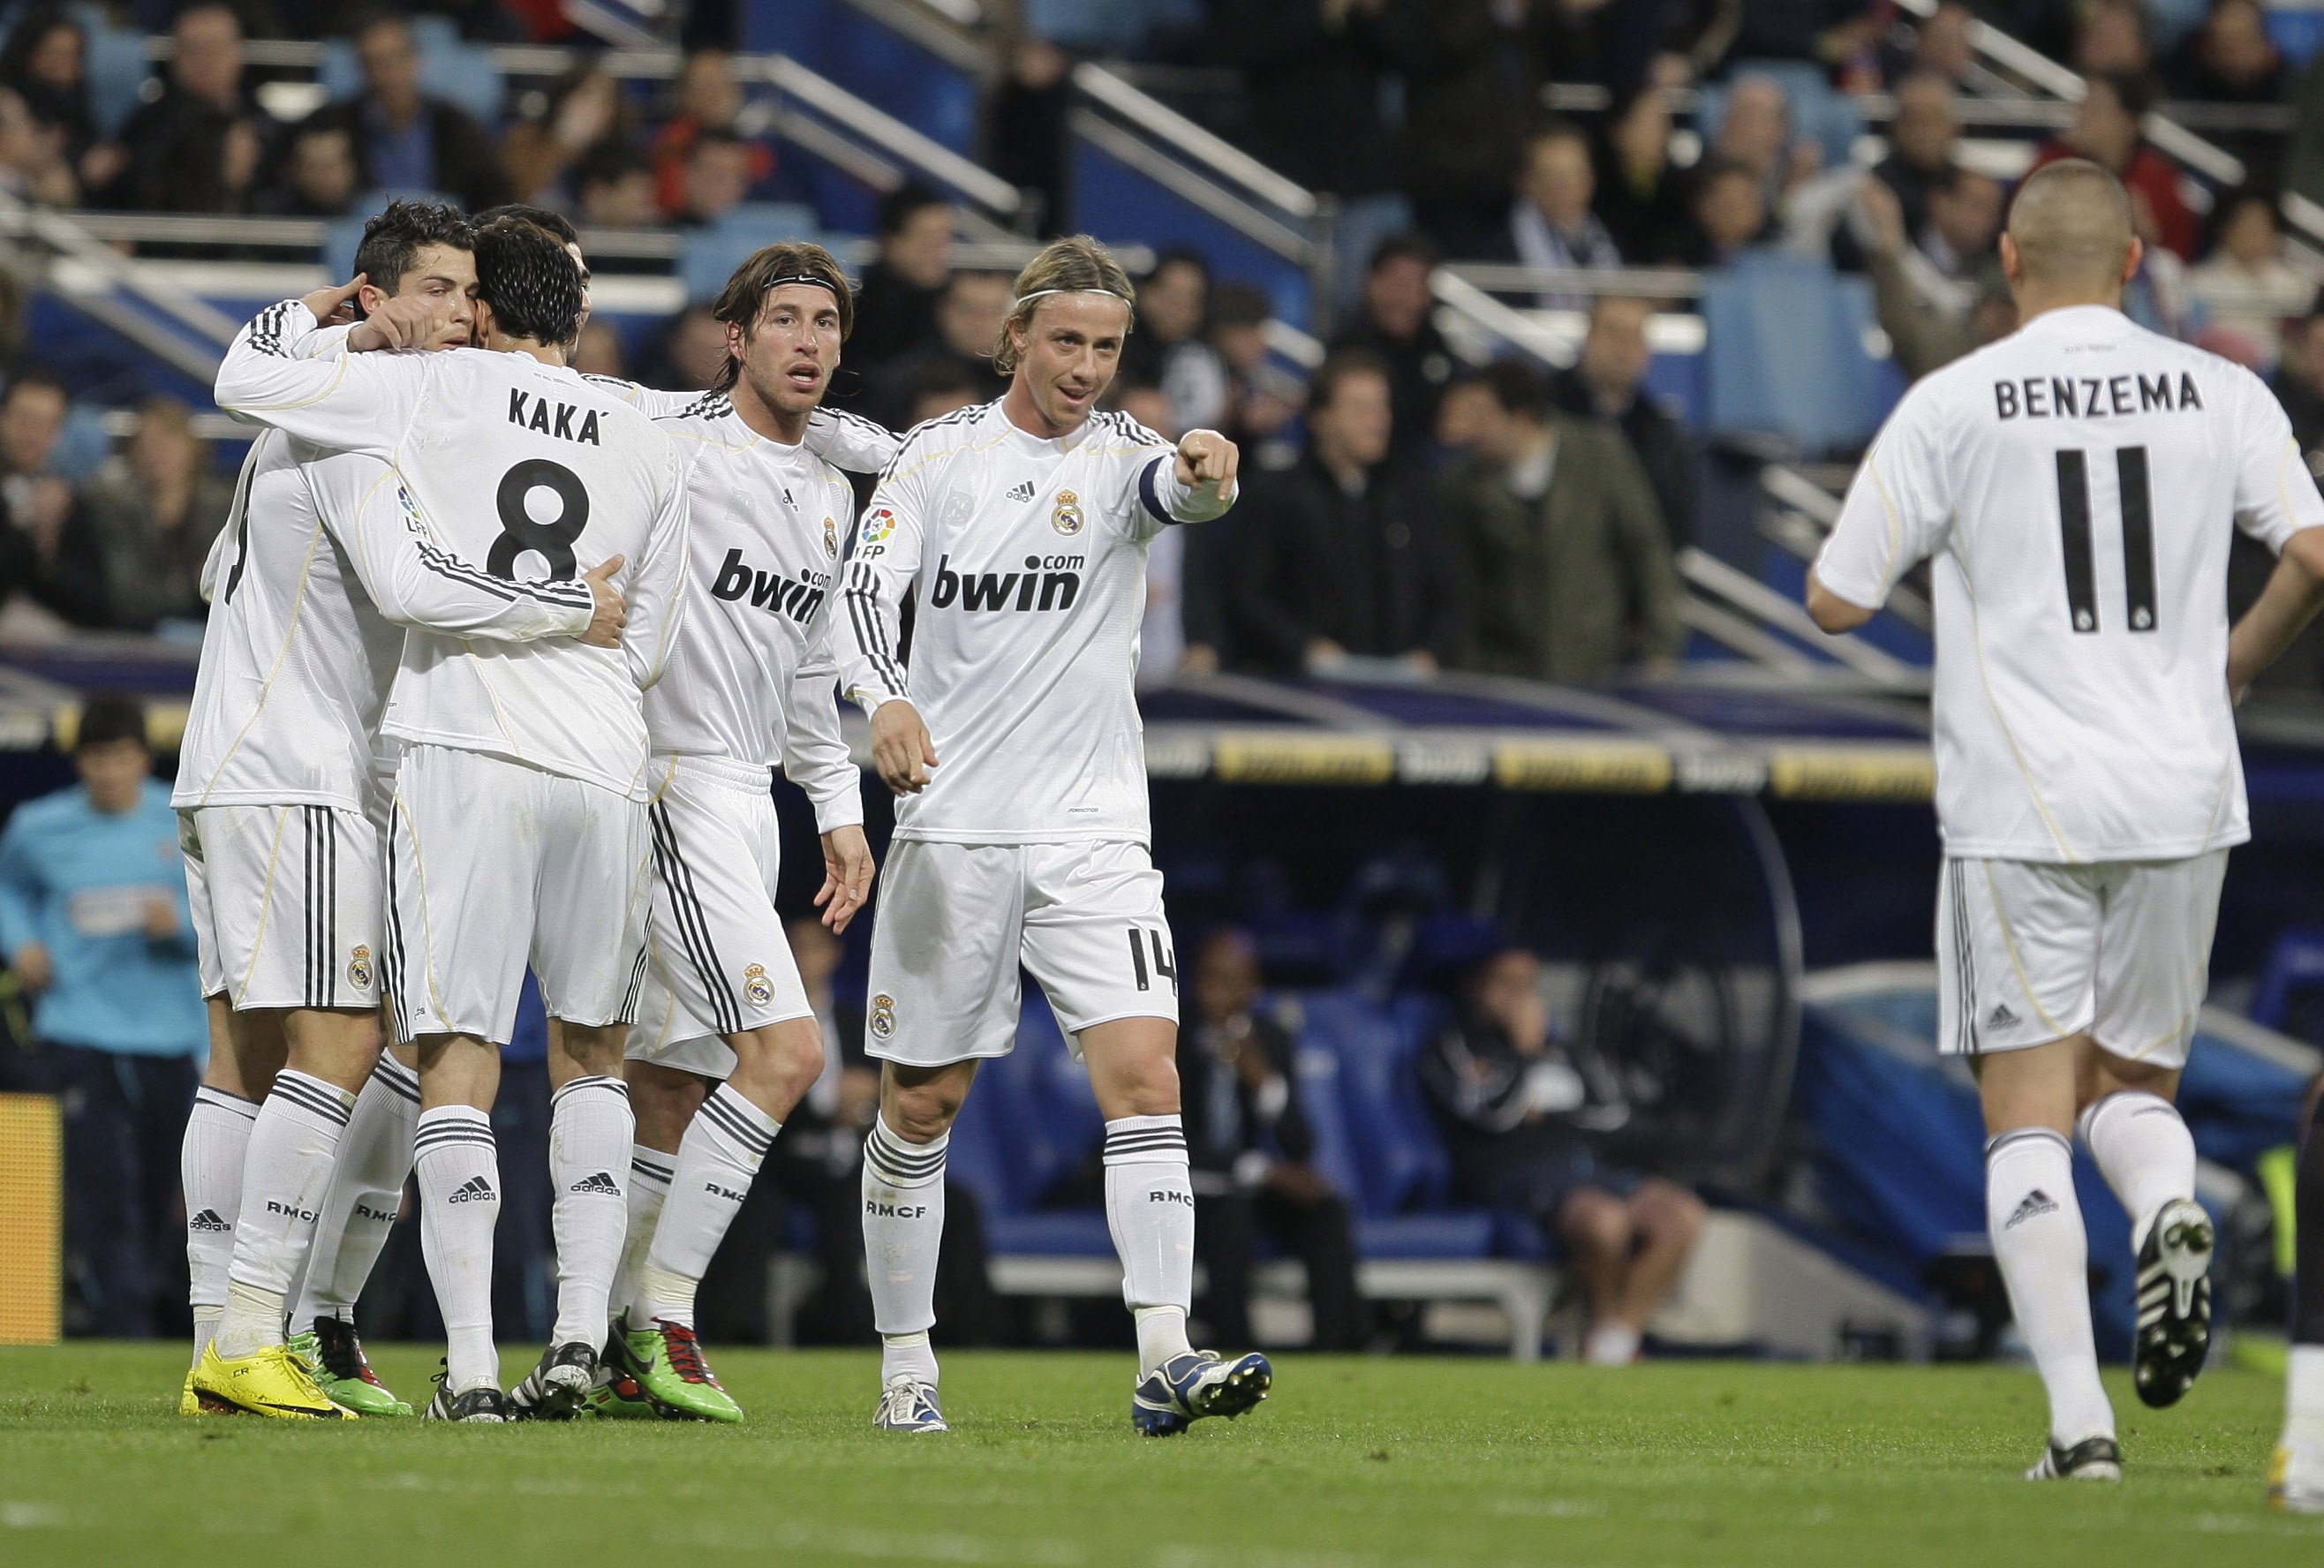 Patrick Mtiliga, La Liga, Cristiano Ronaldo, Real Madrid, Malaga